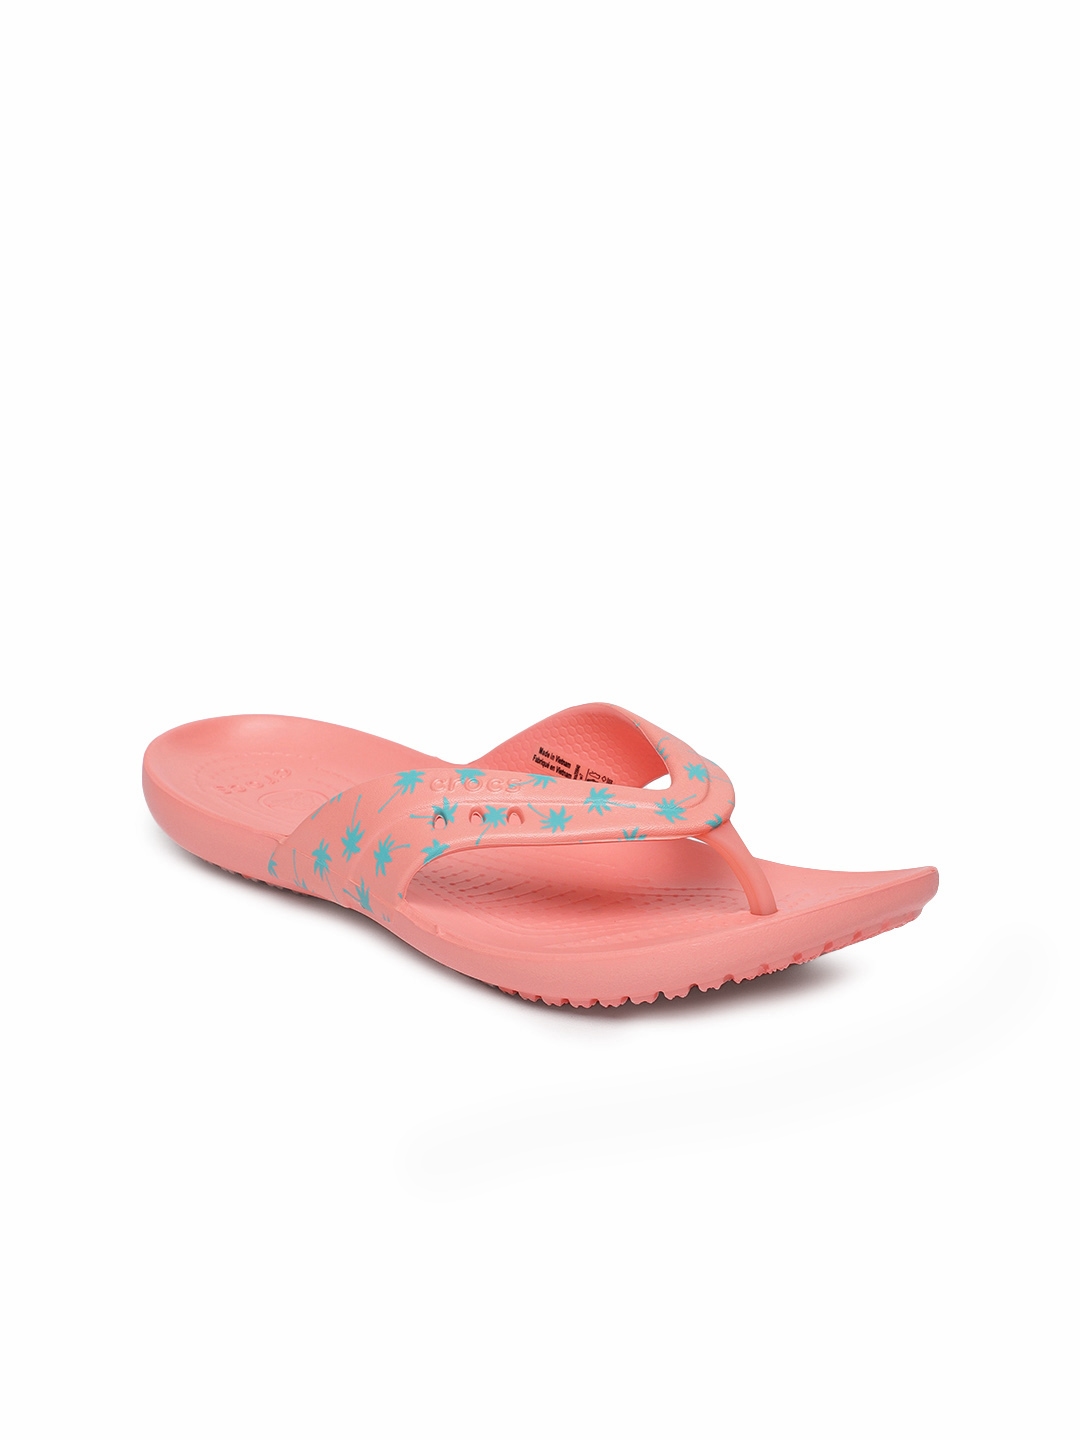 crocs womens thong sandals